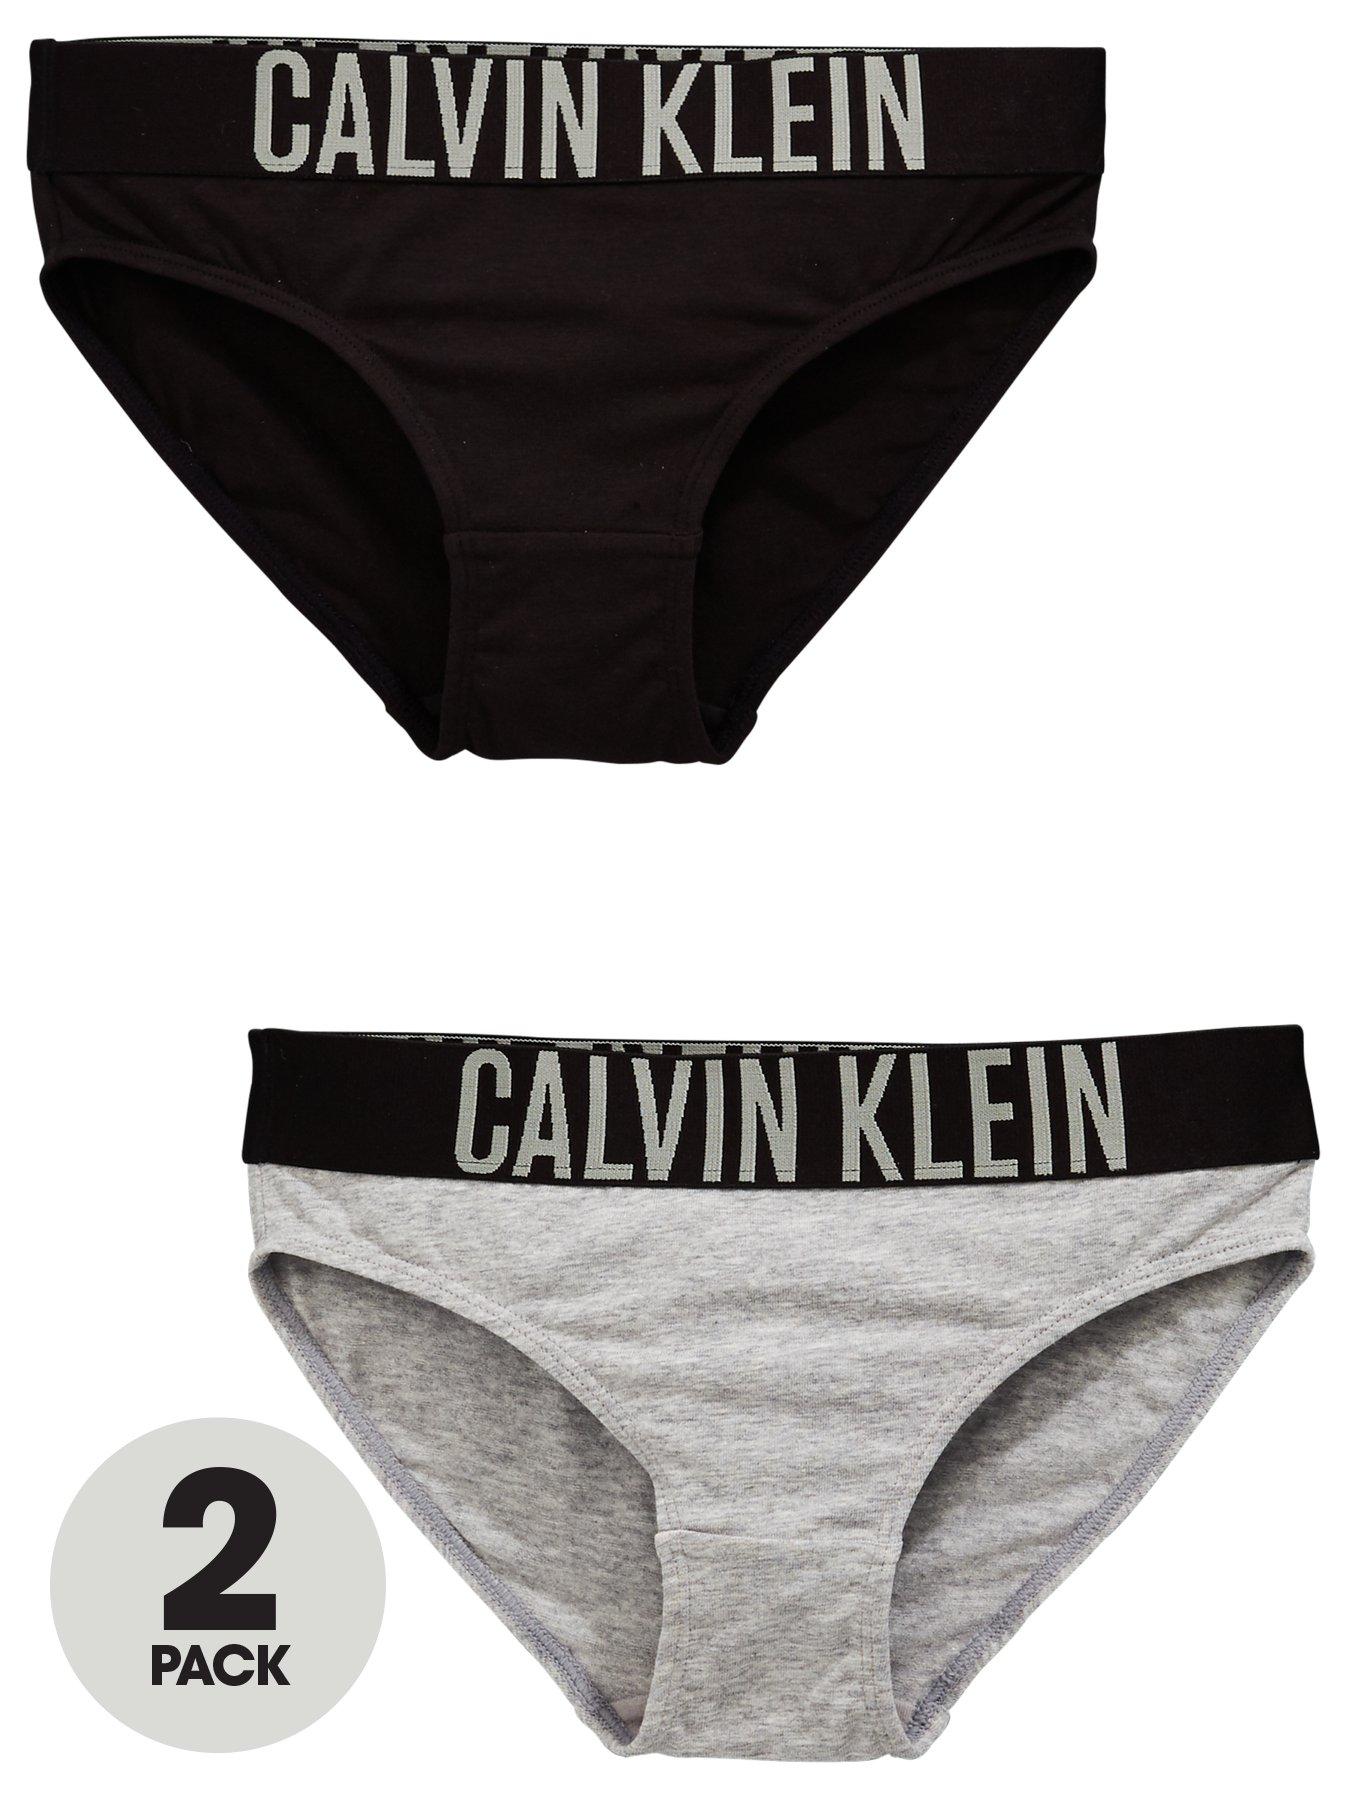 Calvin Klein Kids' Girls Black & White Cotton Knickers (2 Pack)